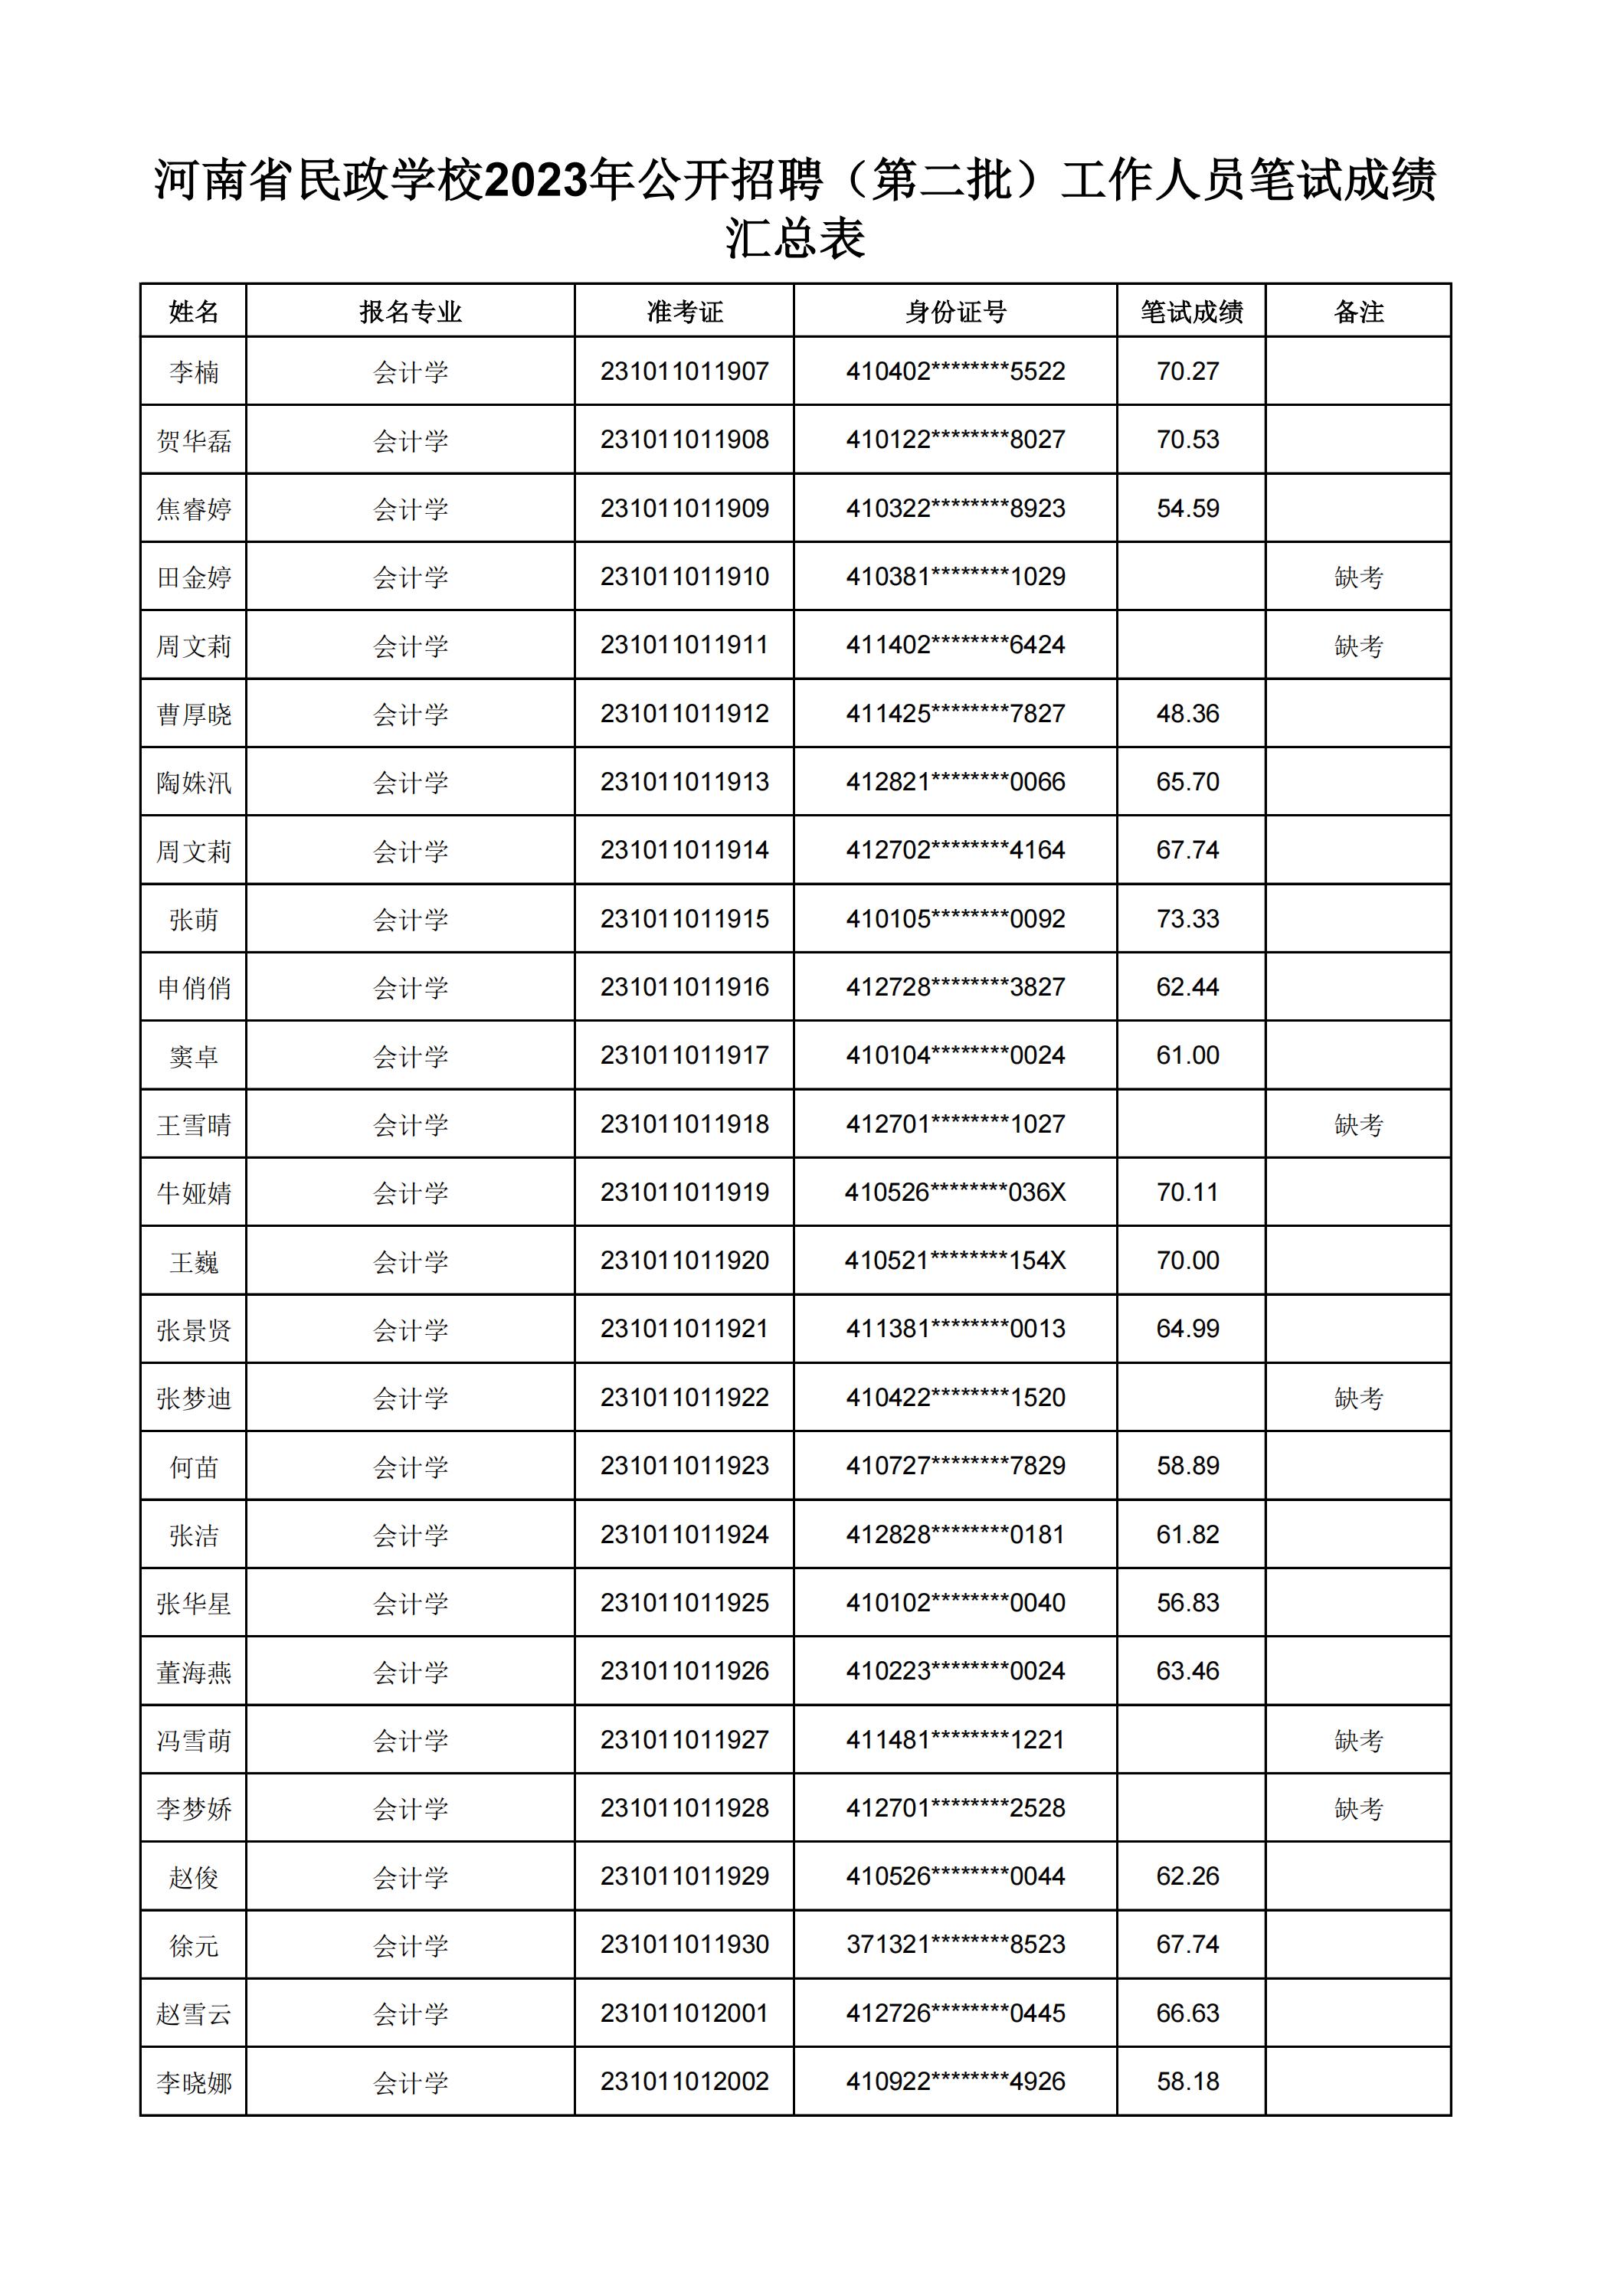 河南省民政学校2023年公开招聘（第二批）工作人员笔试成绩汇总表(2)_21.jpg